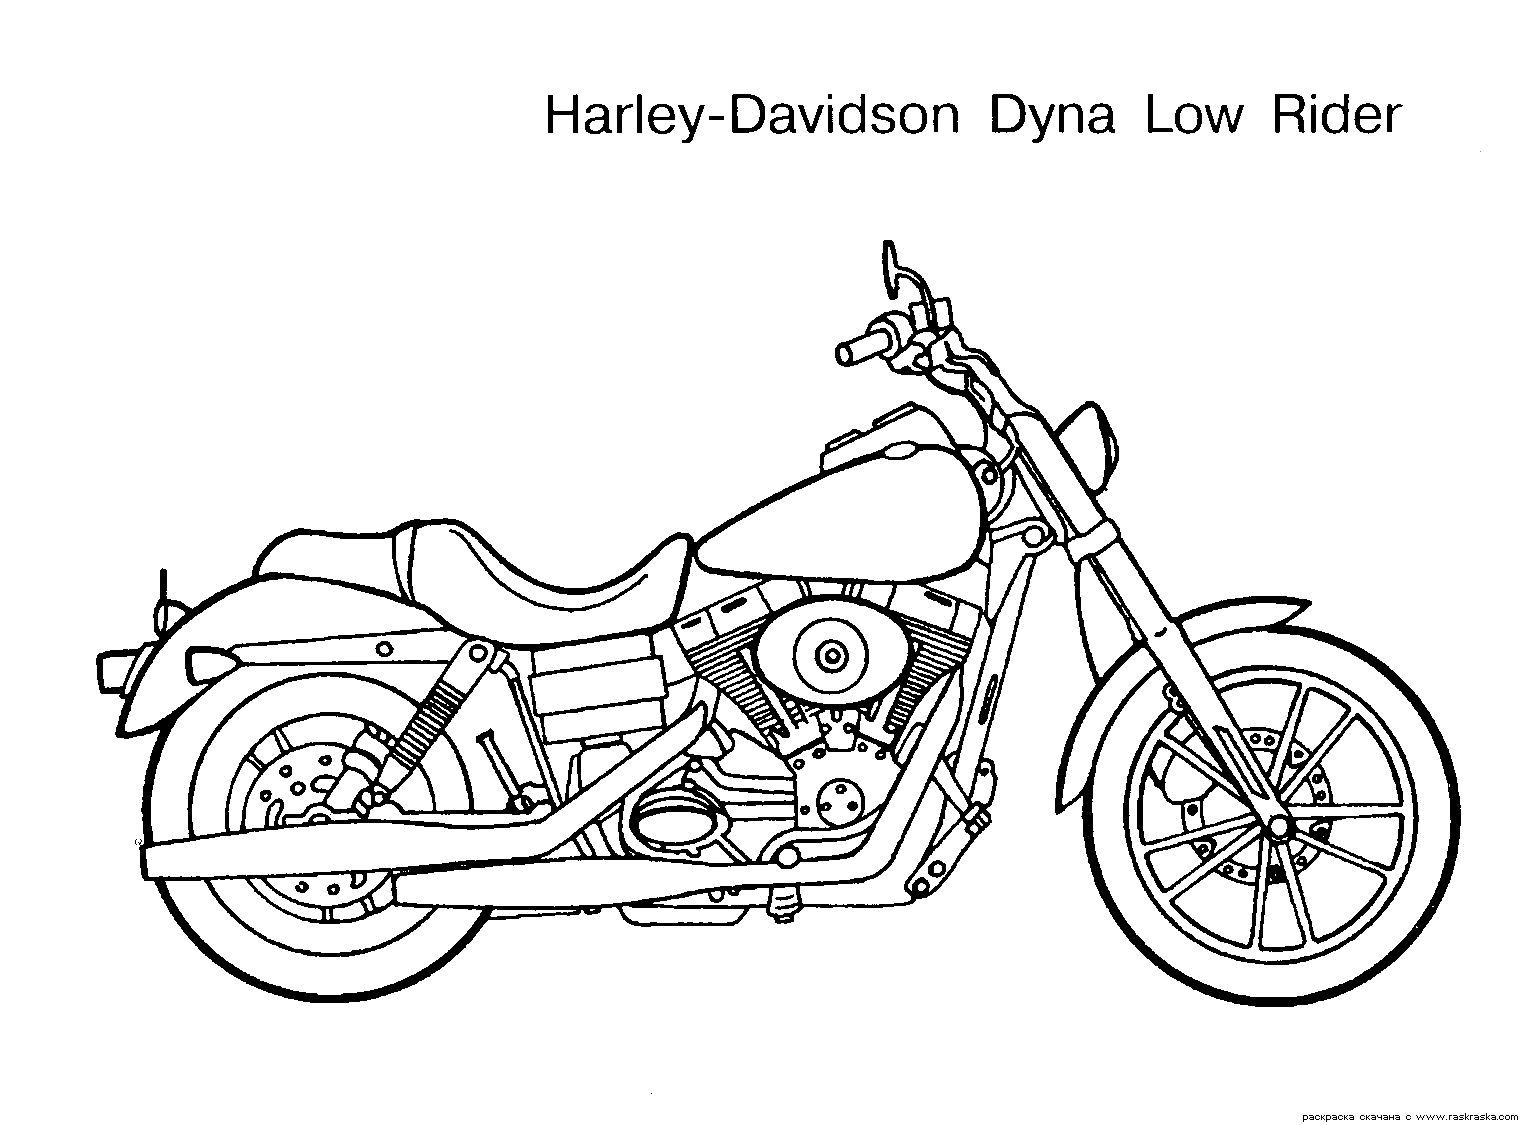 Dibujo para colorear - La moto no es fácil elegir